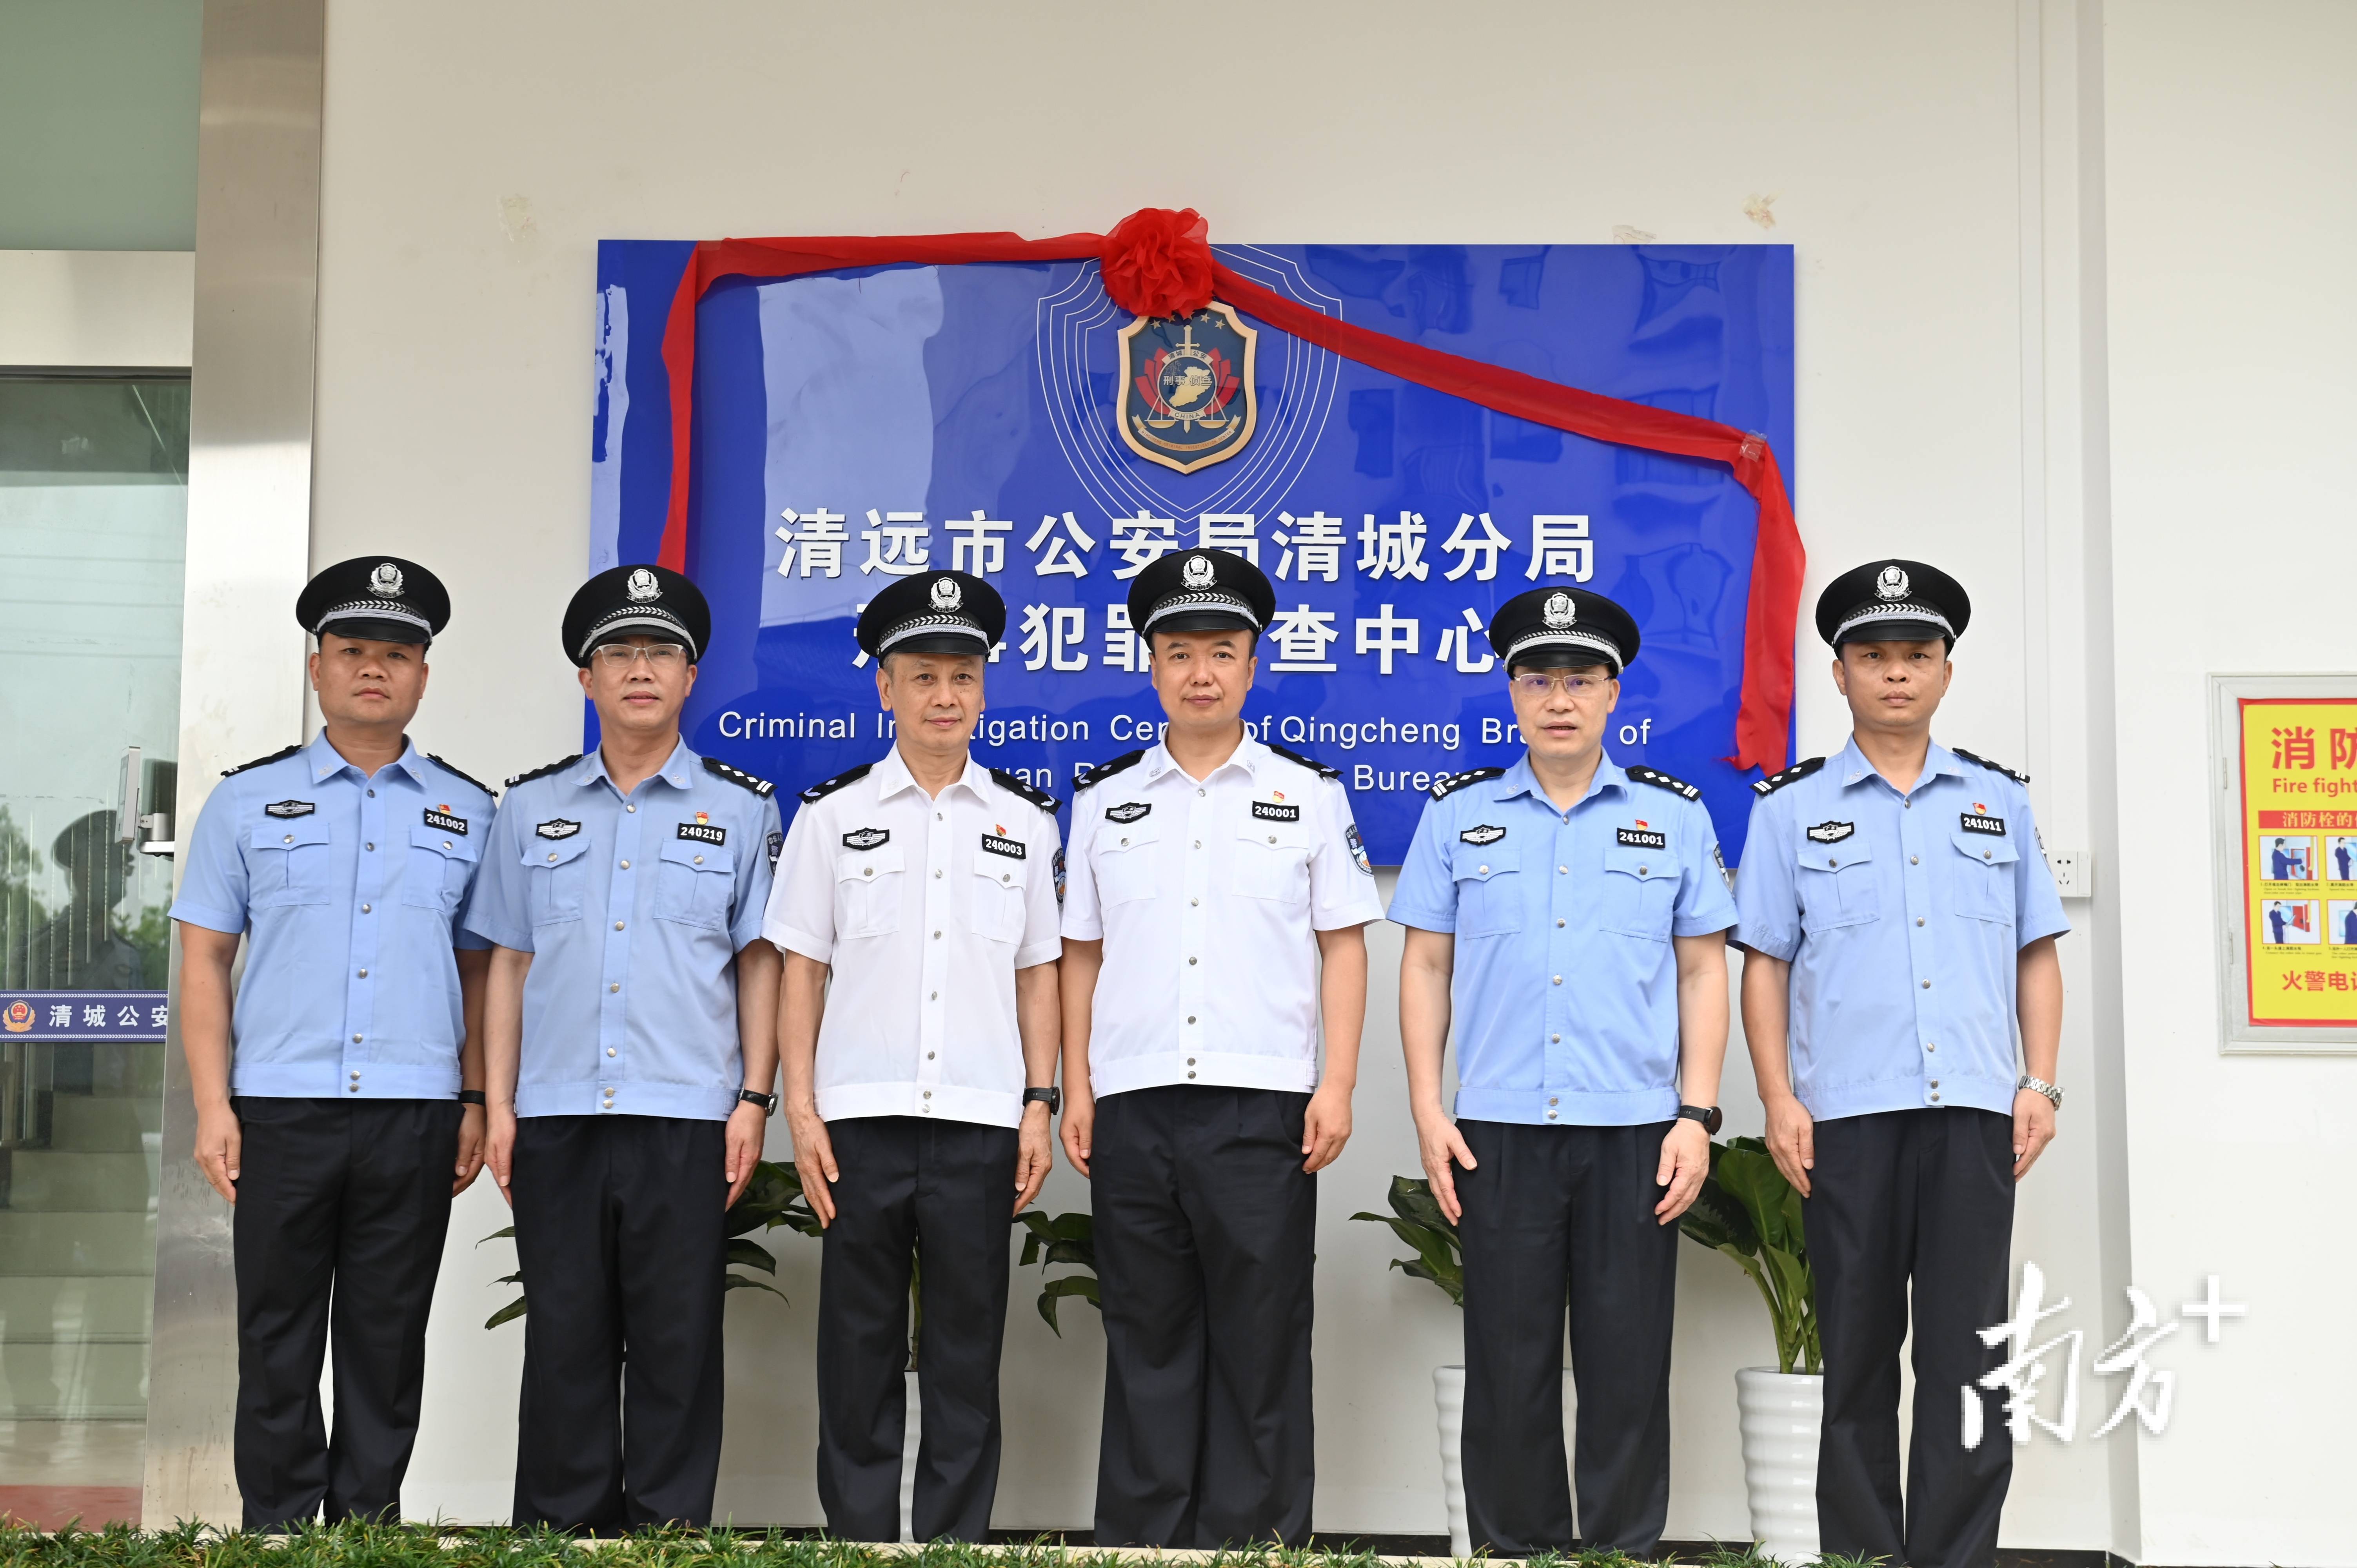 清远市公安局清城分局刑事犯罪侦查中心正式揭牌成立